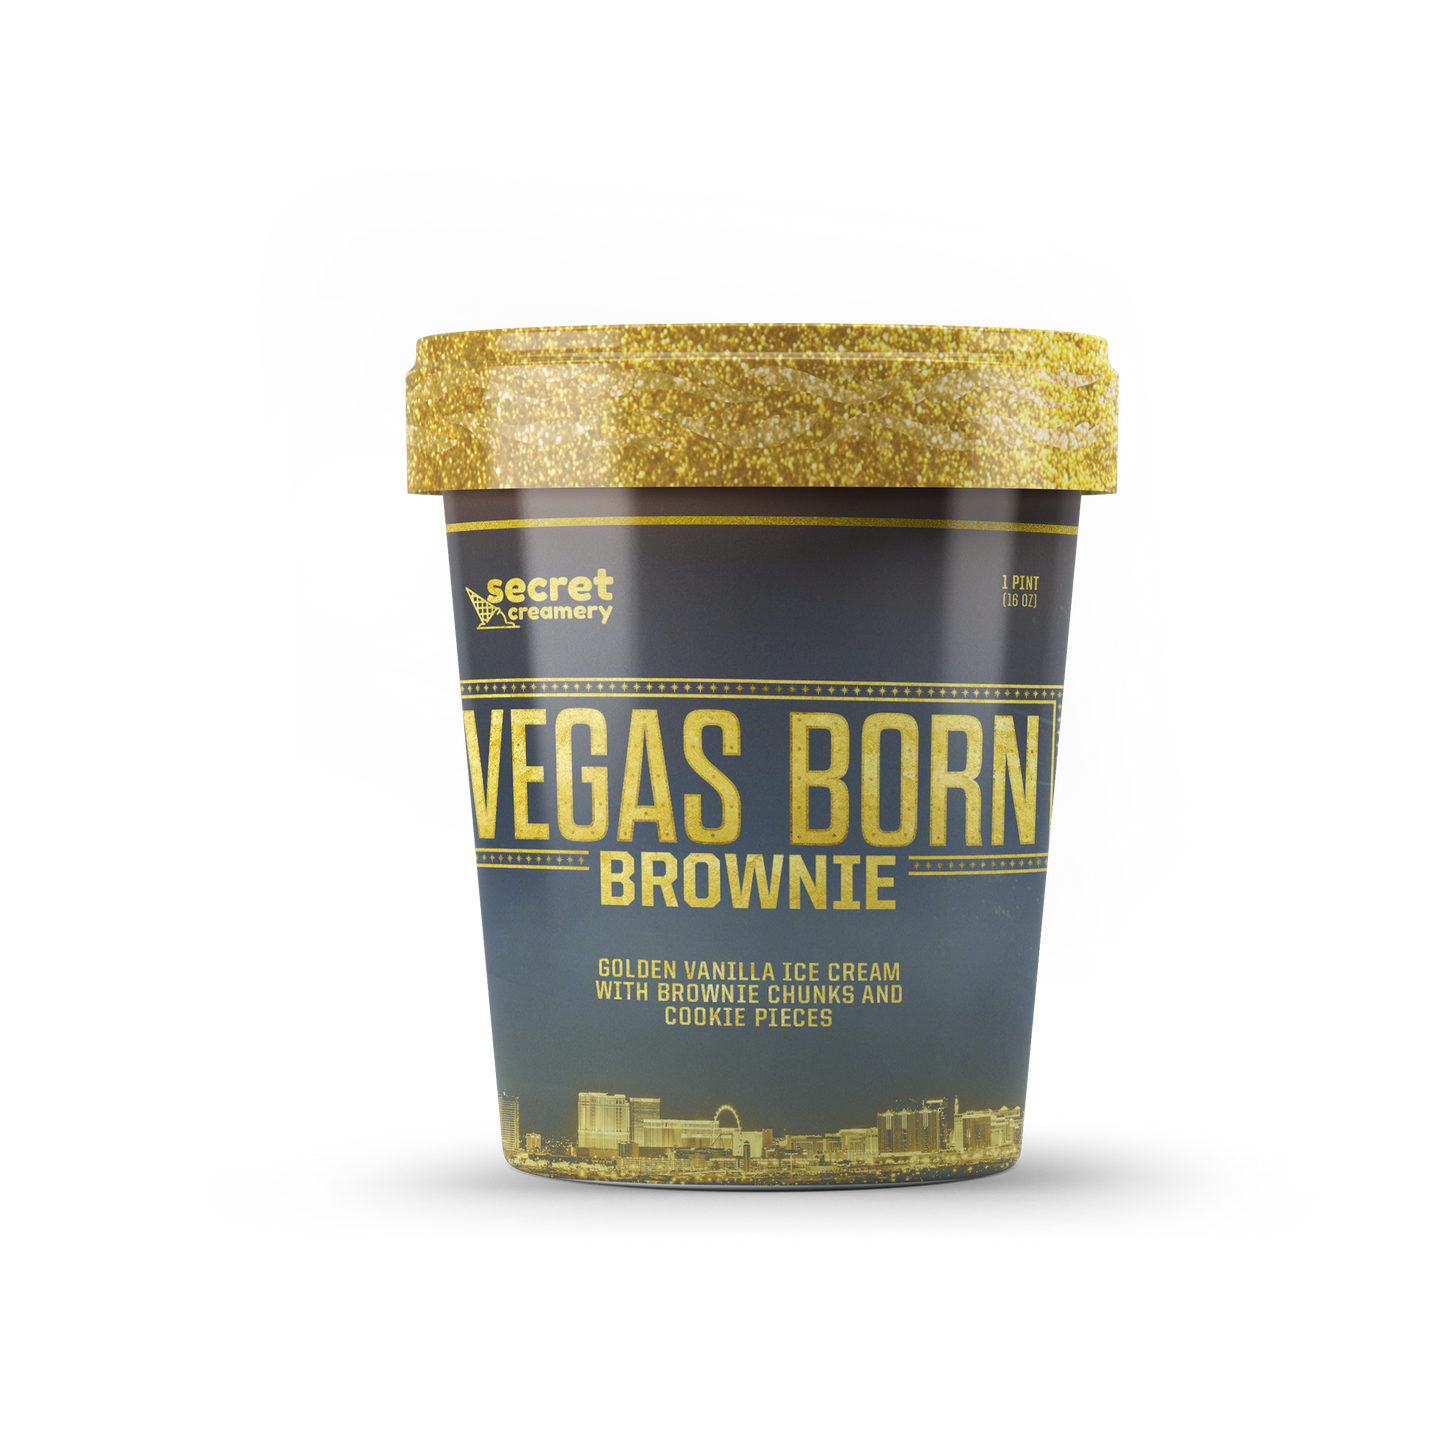 Vegas Born Brownie